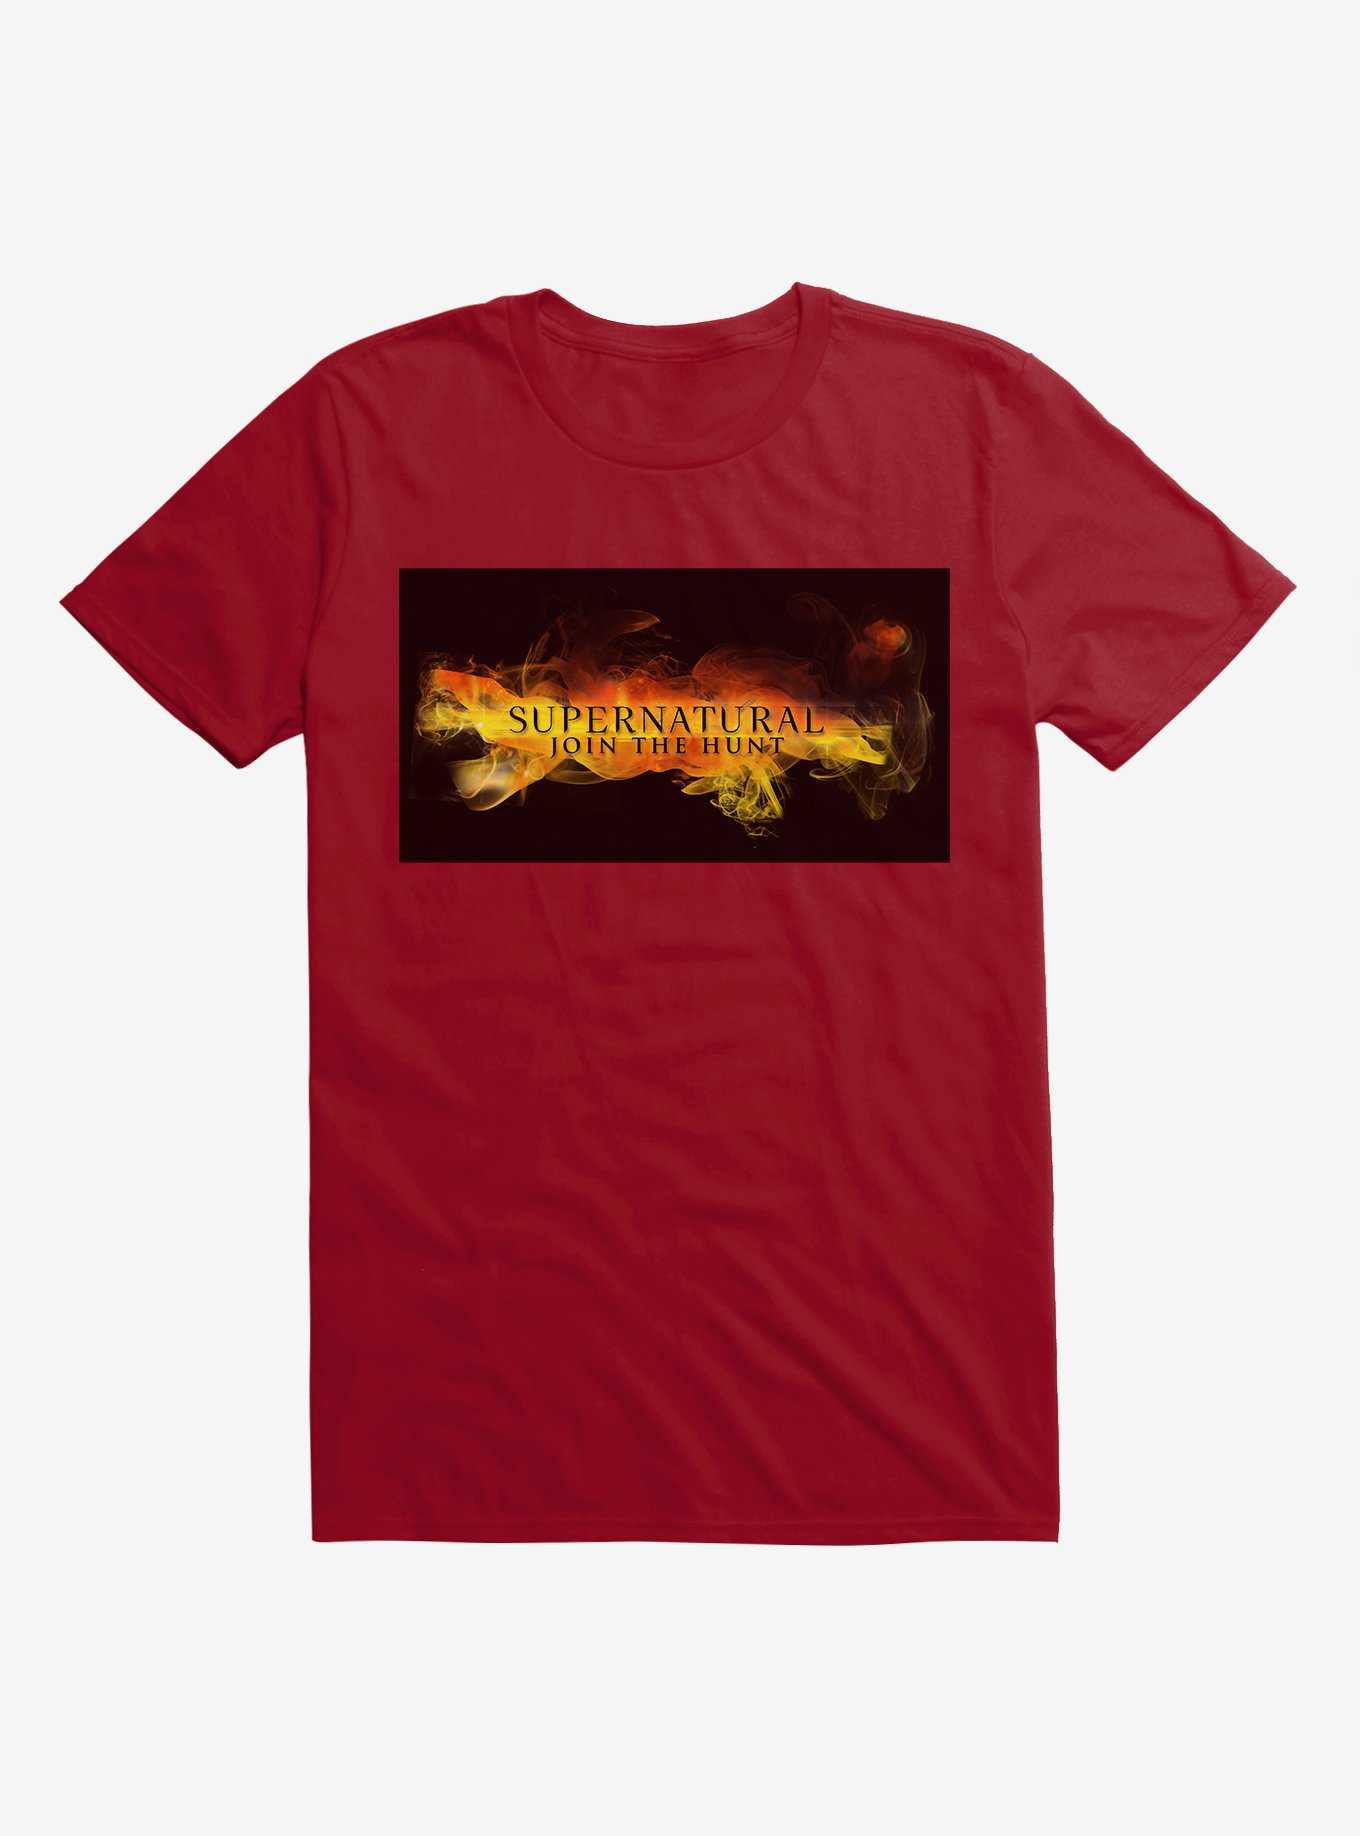 Supernatural Join The Hunt Fog T-Shirt, , hi-res